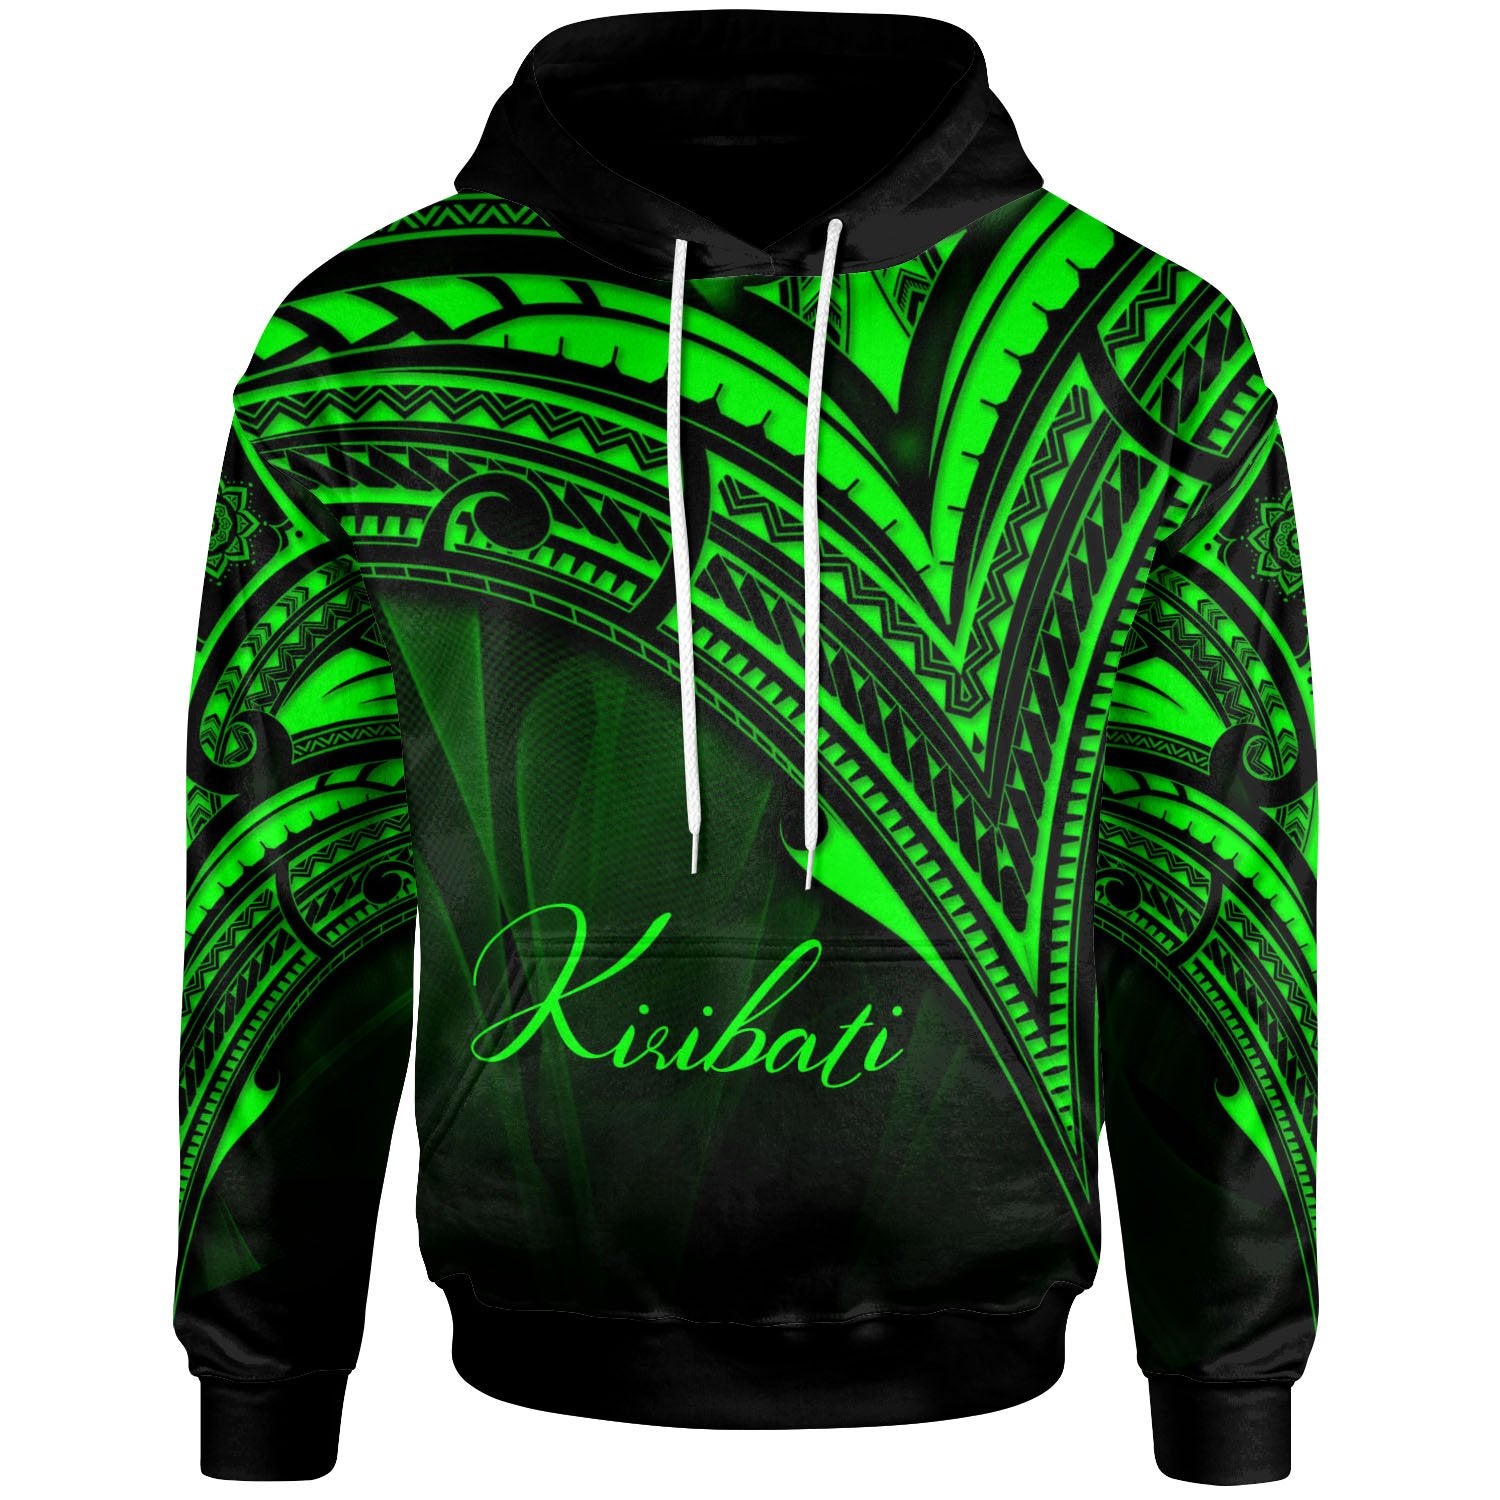 kiribati-hoodie-green-color-cross-style